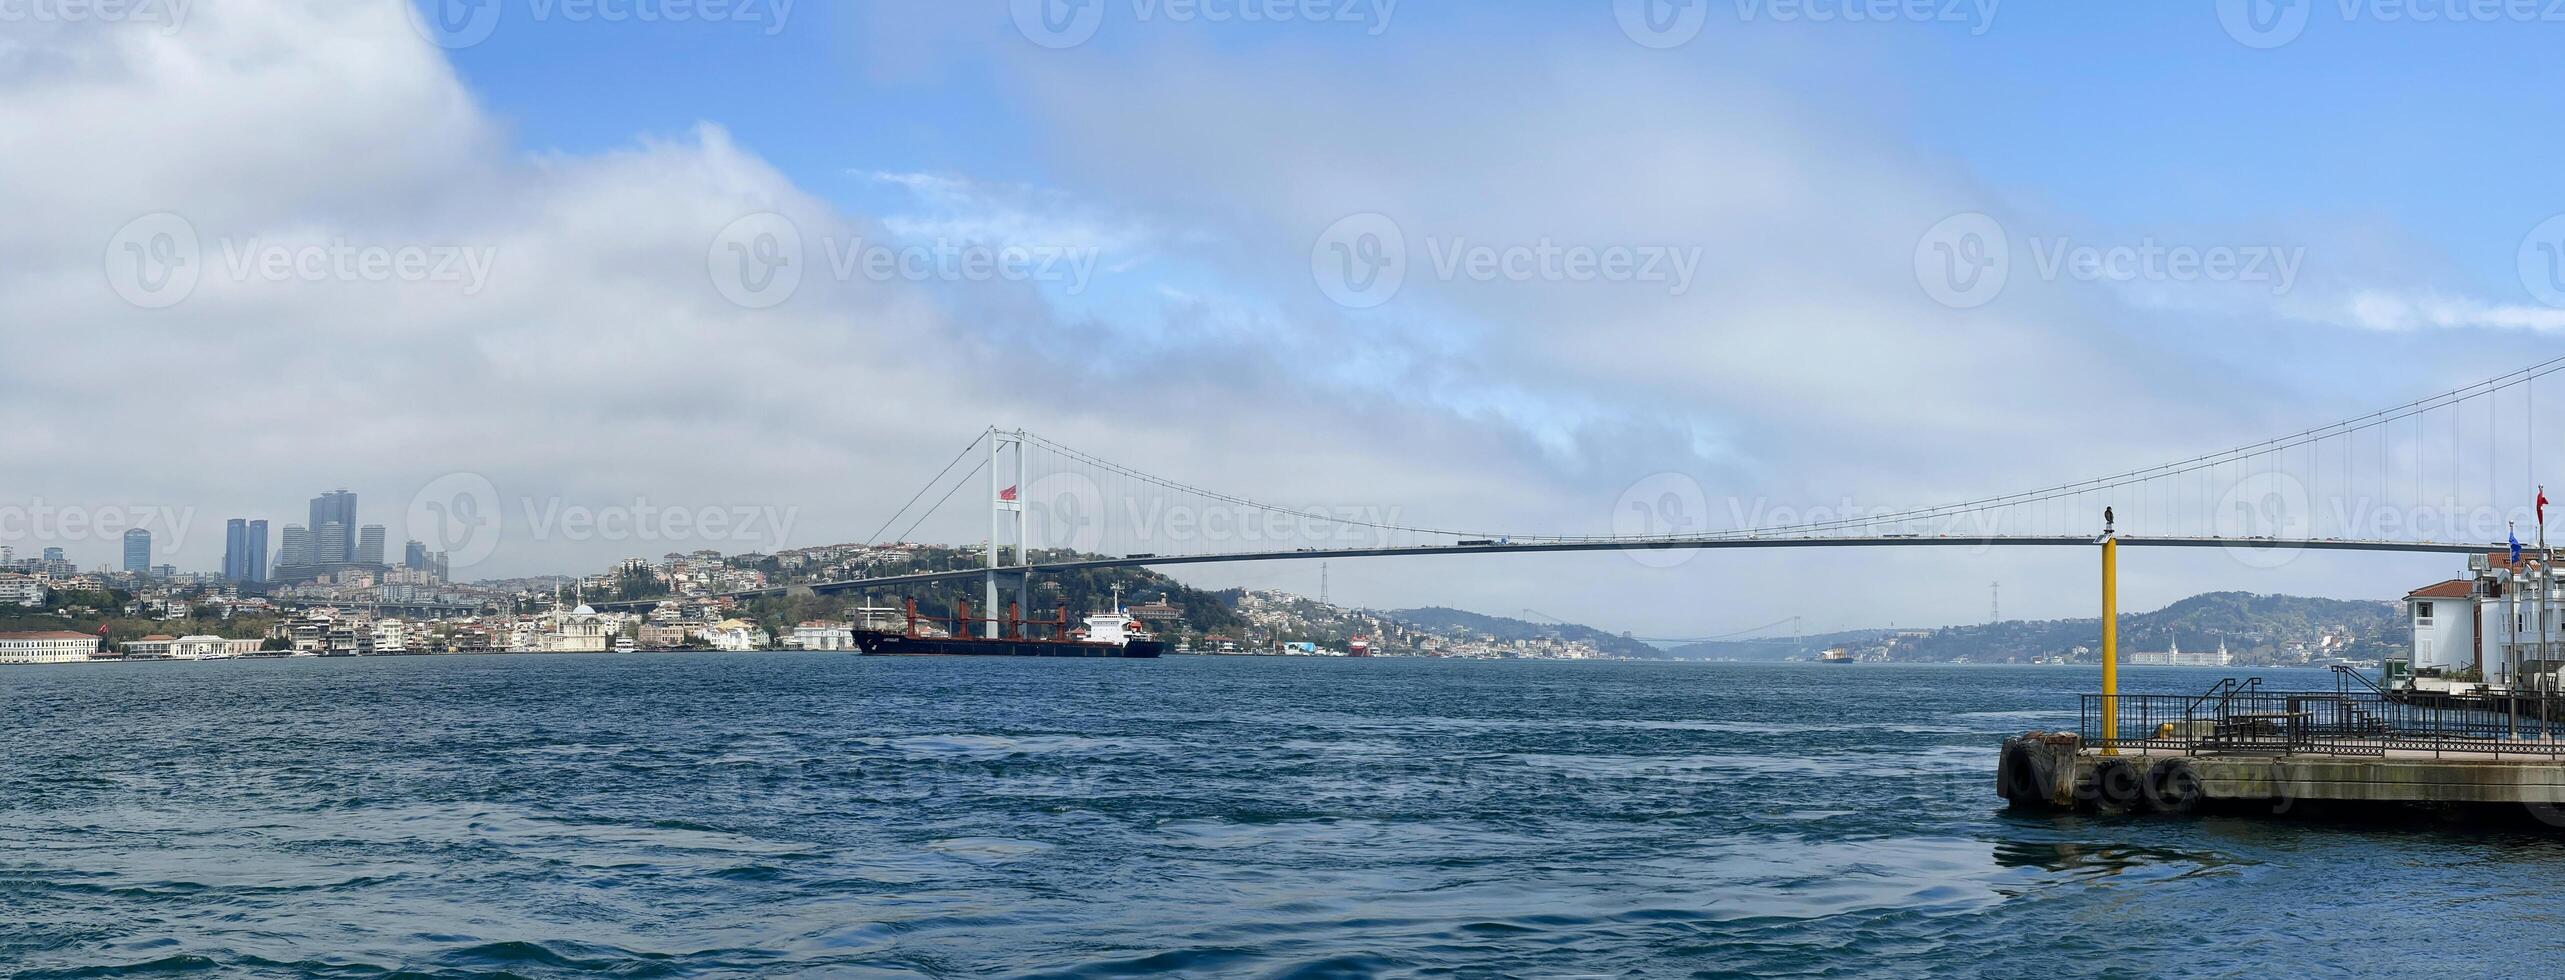 de Bosporus brug van de Aziatisch kant van Istanbul, kalkoen foto